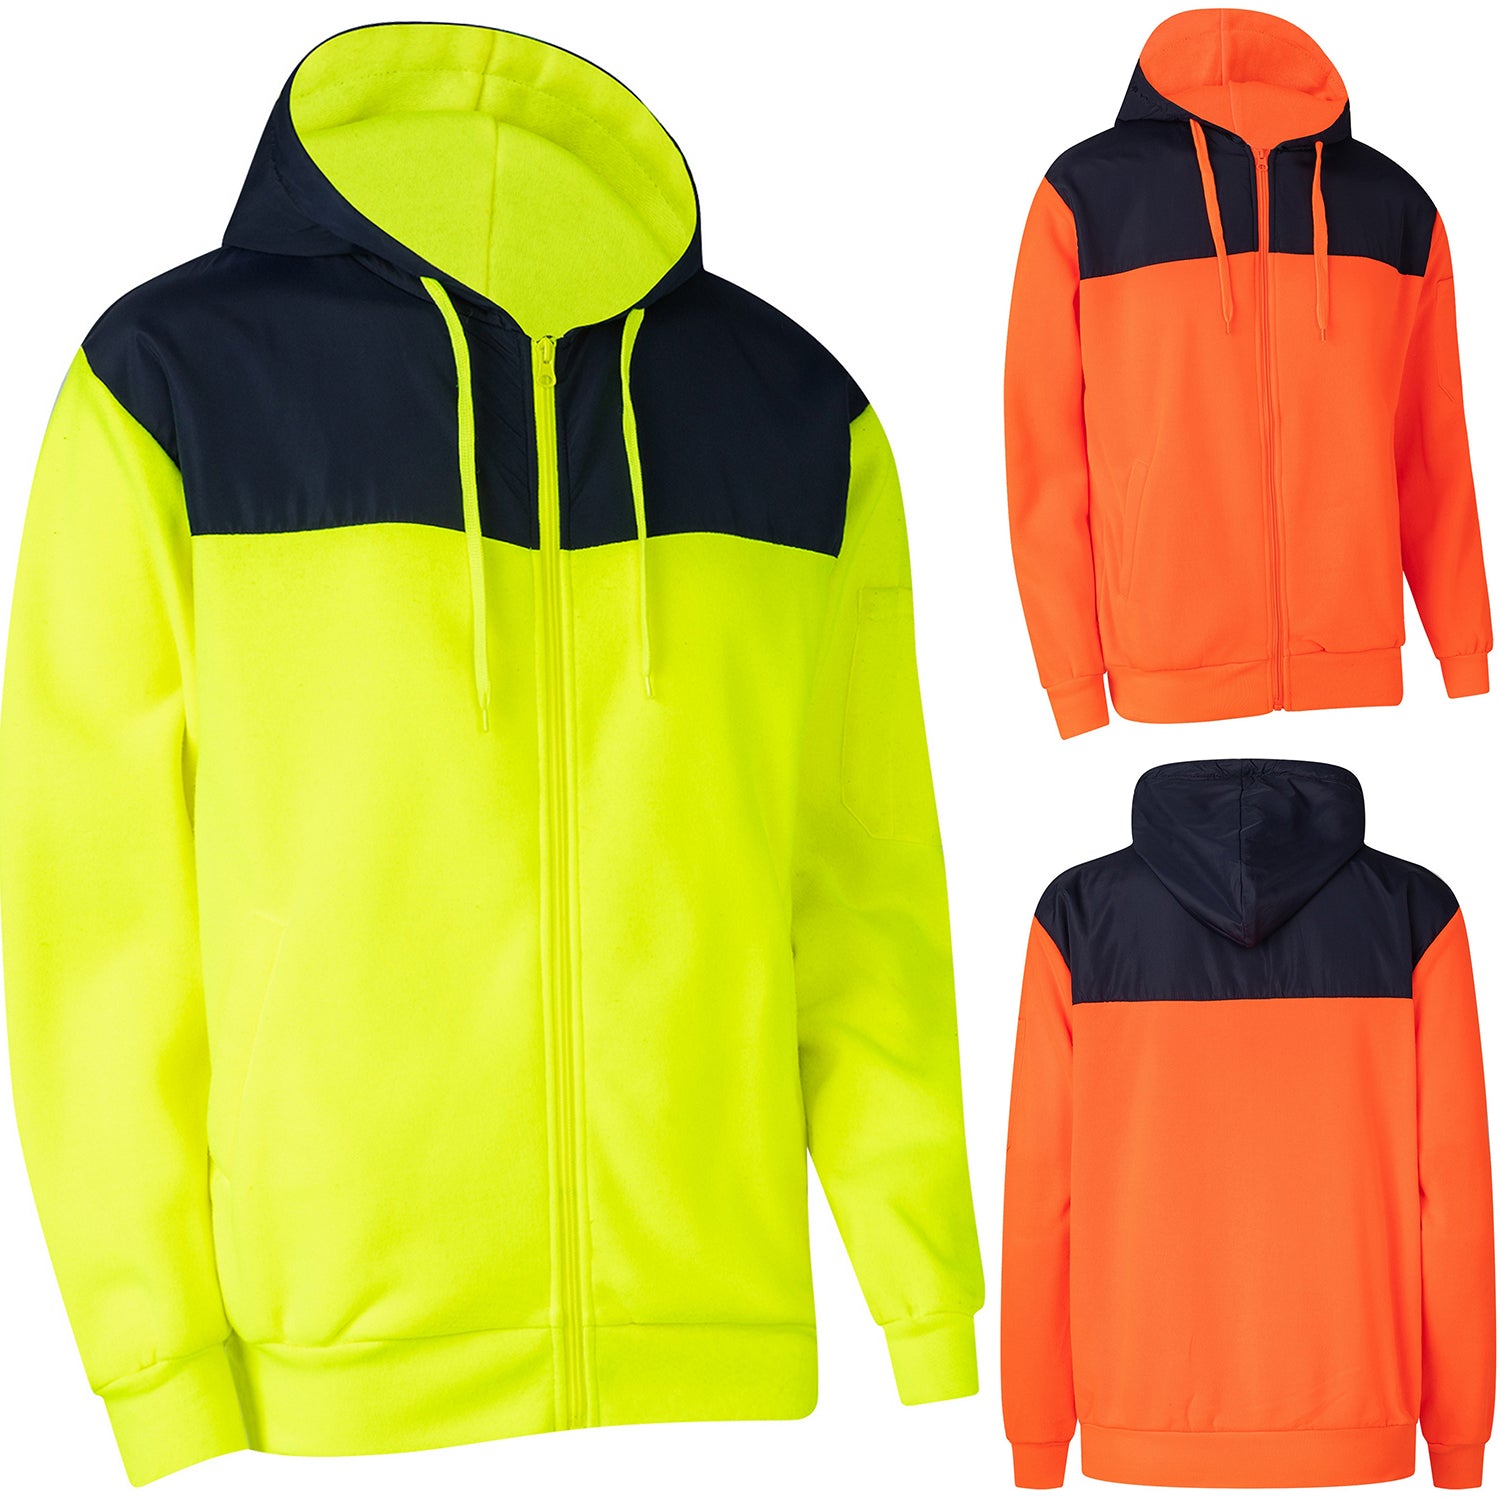 HI VIS Hooded Safety Jacket Hoodie Full Zip Tradie Workwear Fleece Lined Jumper - Zmart Australia